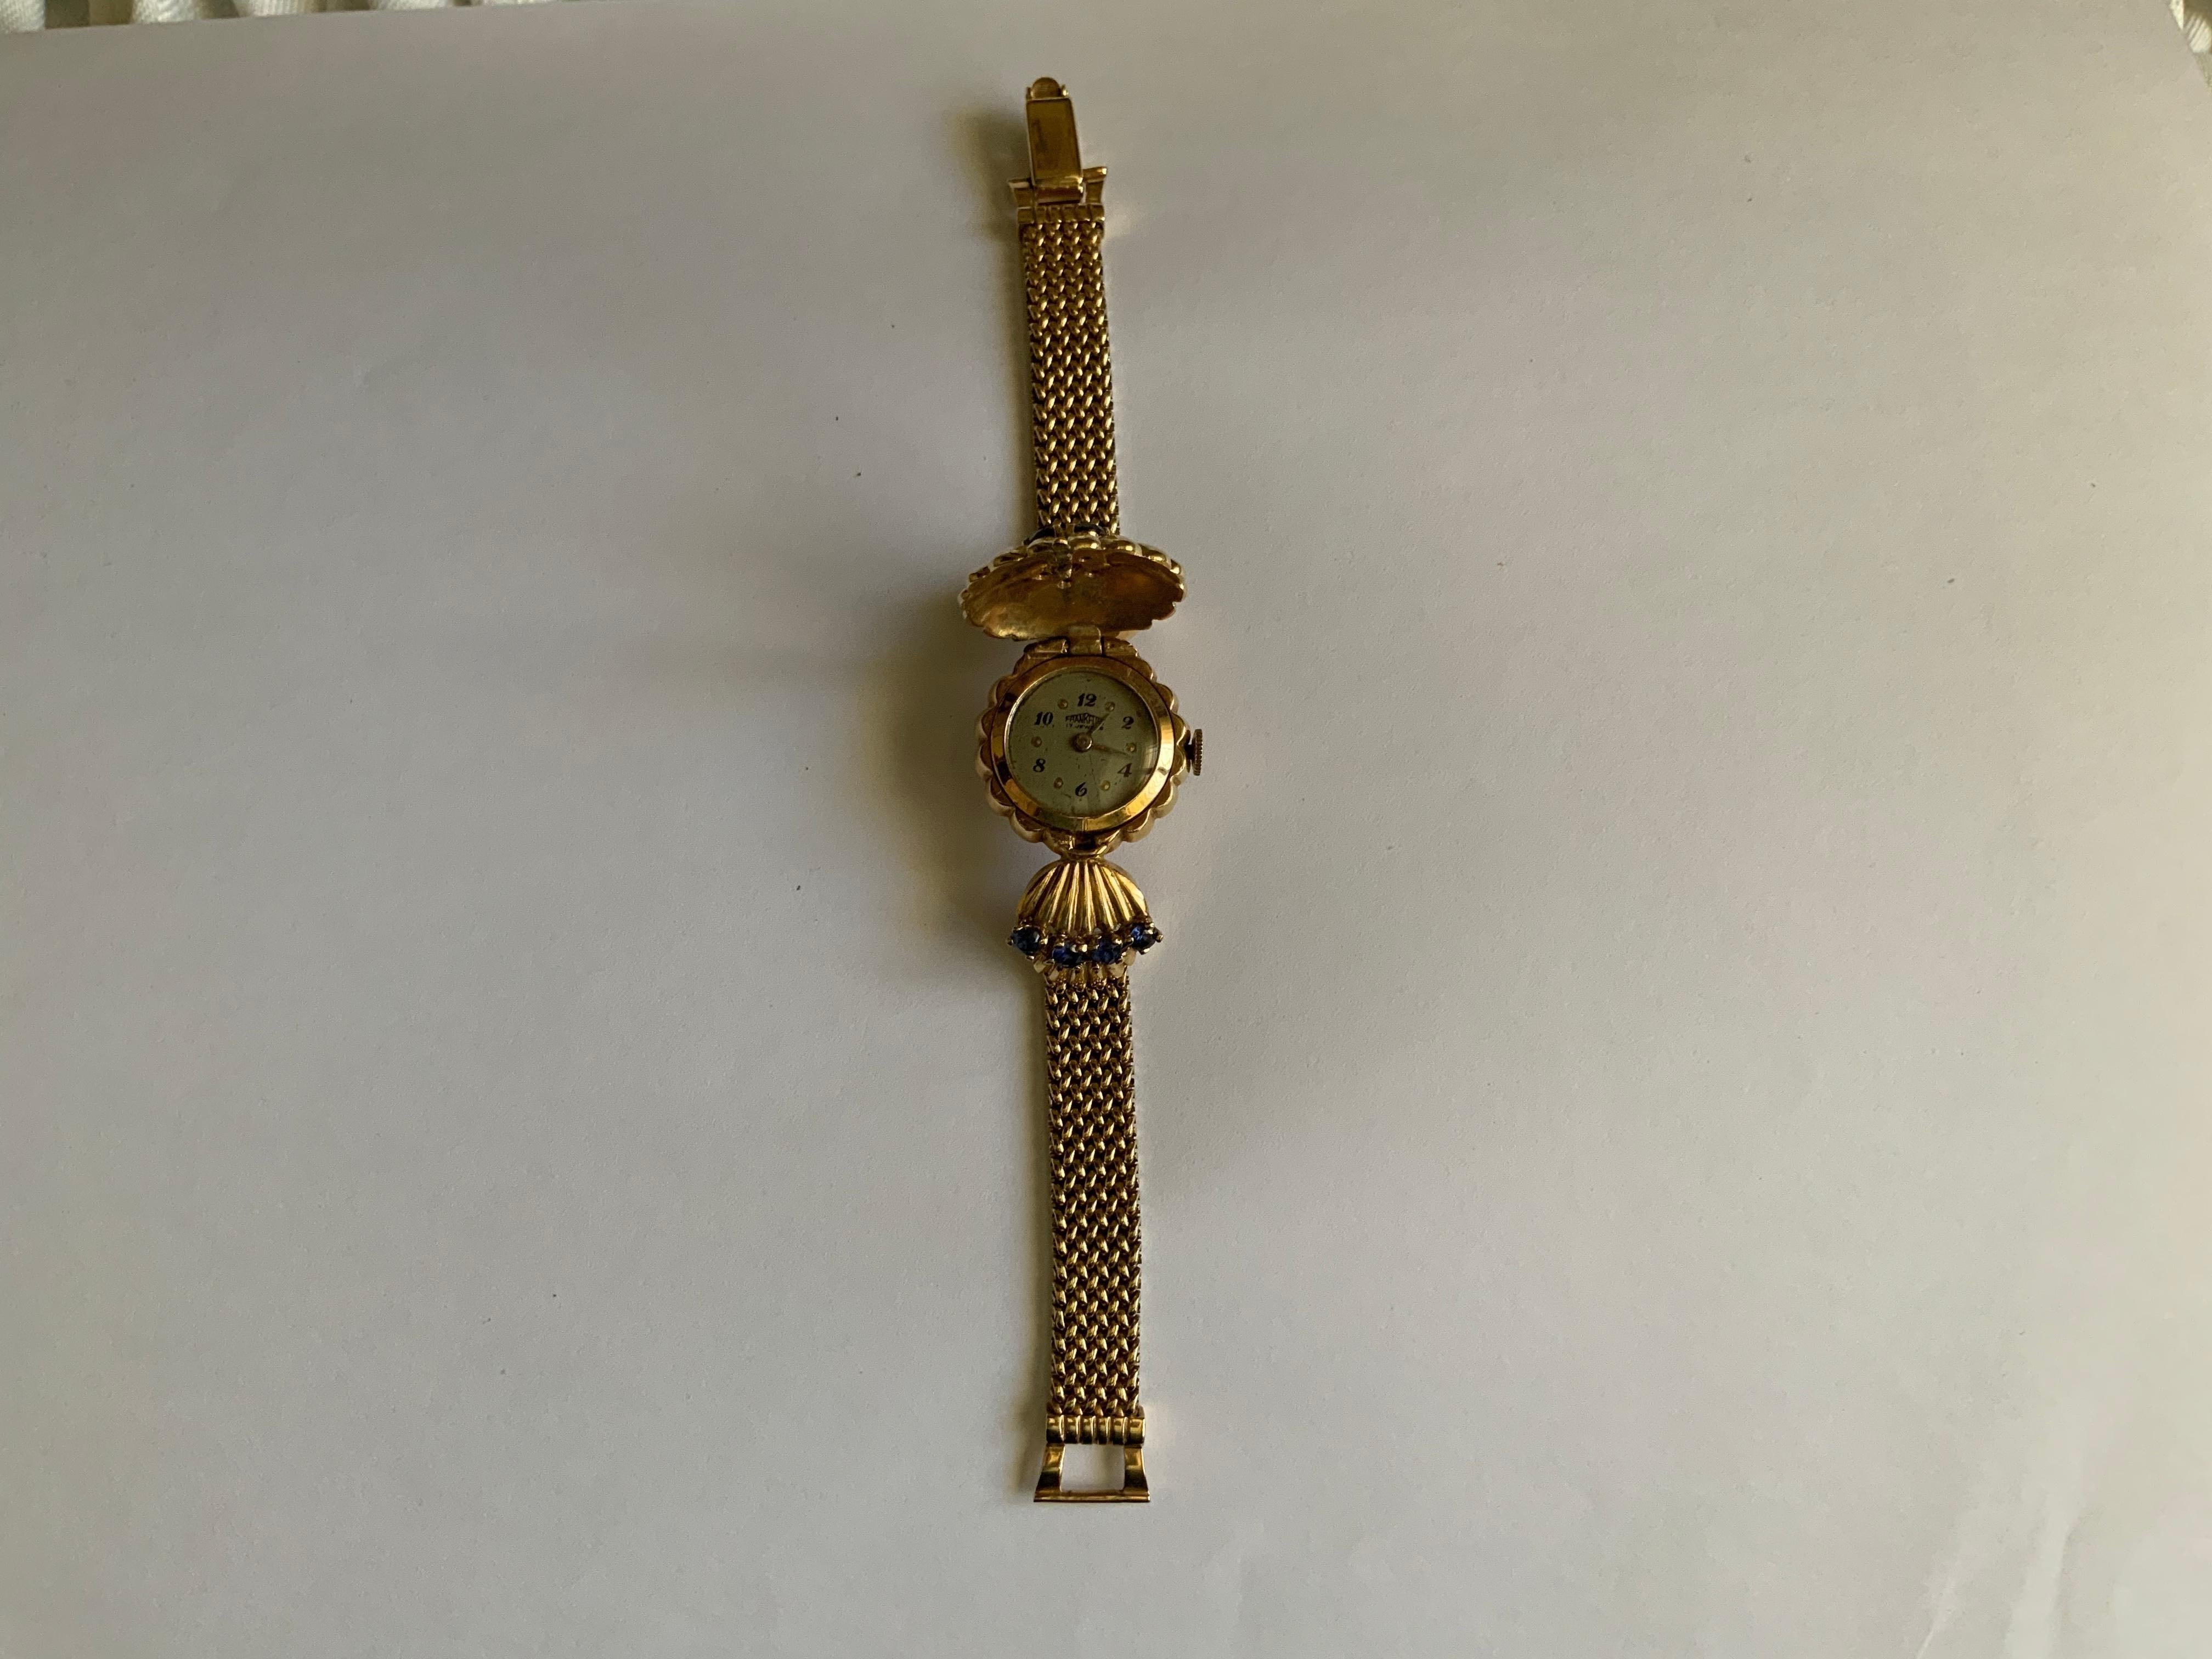 Dies ist ein 14K Gold, Diamanten und Saphiren Armband Uhr. Es zeigt eine versteckte runde Uhr (Frankfurter Handaufzugswerk mit 17 Steinen) mit einem goldenen Deckel in Form einer Blume mit geriffelten Blütenblättern, die in der Mitte mit fünf